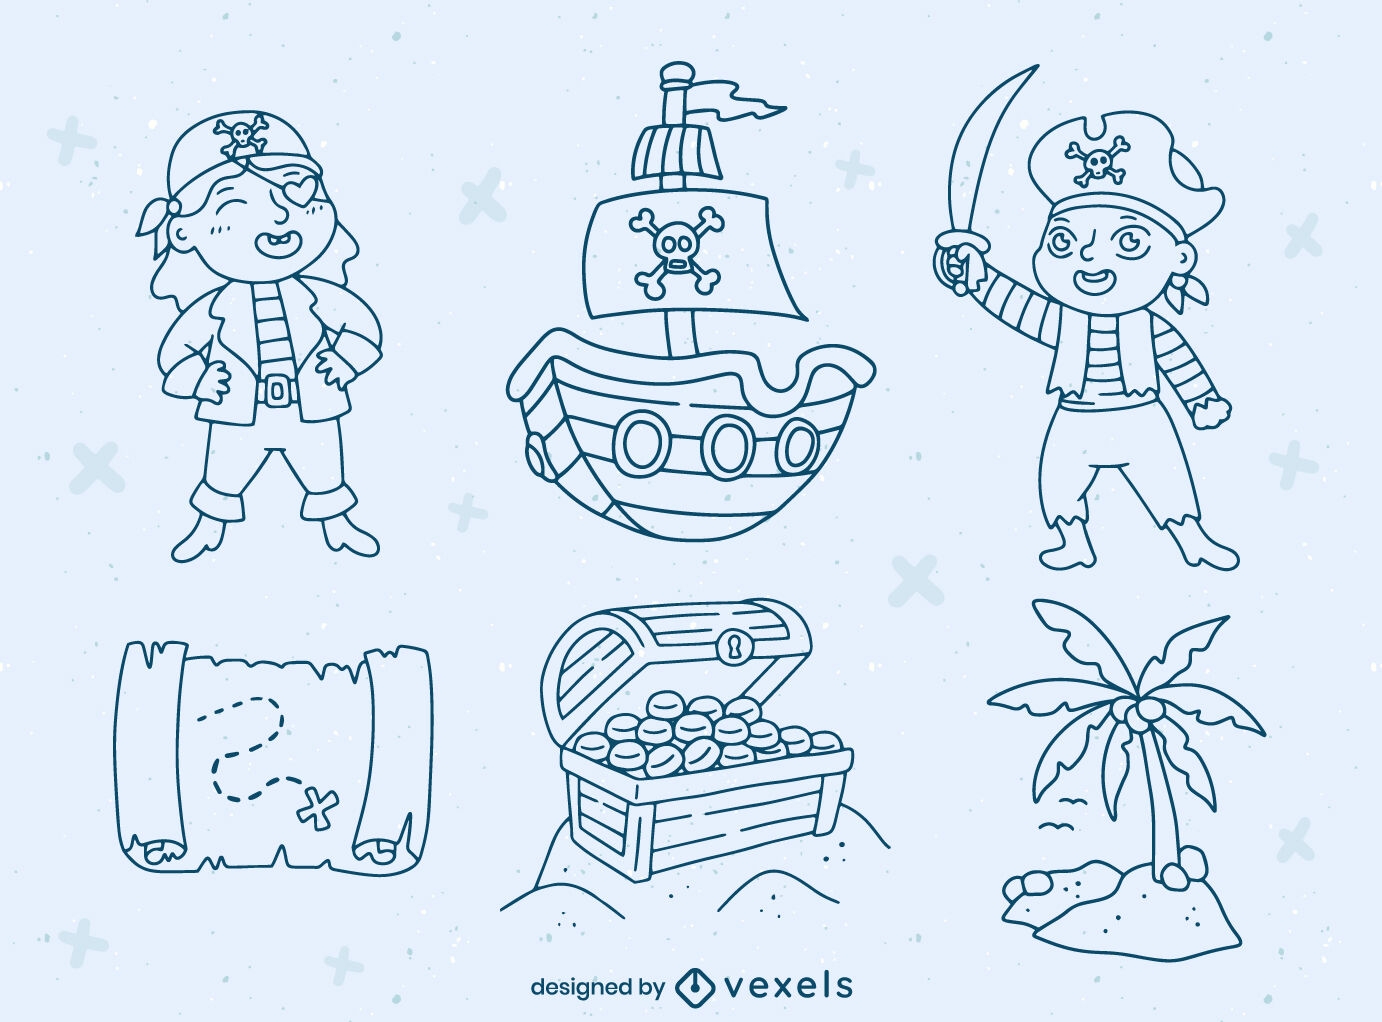 Piratenkinderfiguren und Elemente gesetzt